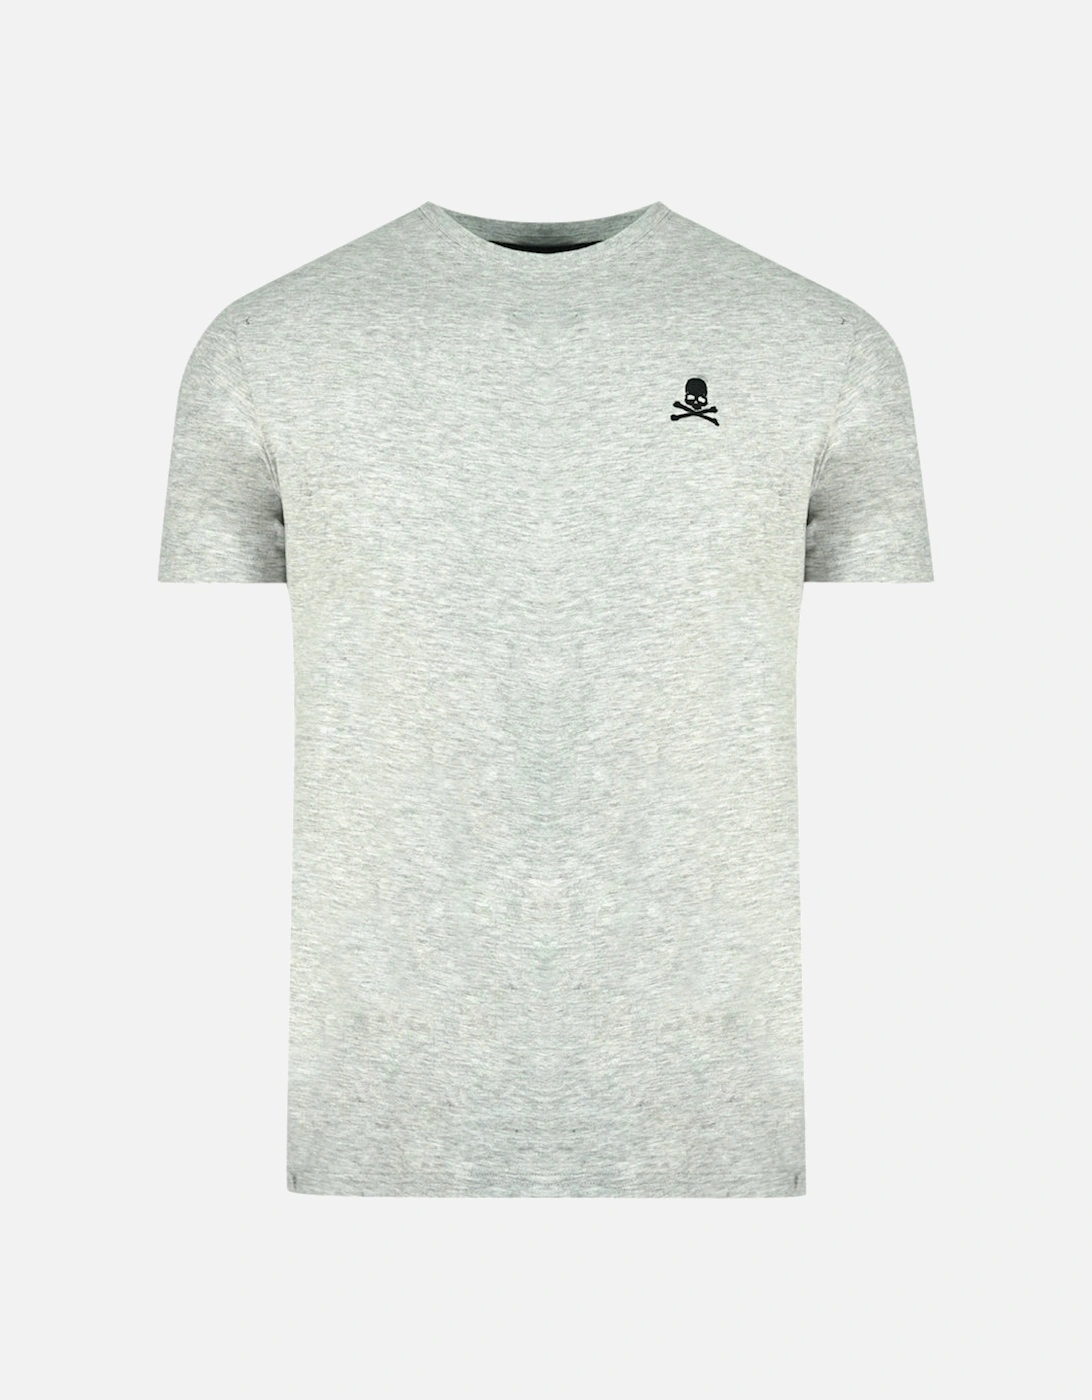 Skull And Crossbones Logo Grey Underwear T-Shirt, 3 of 2